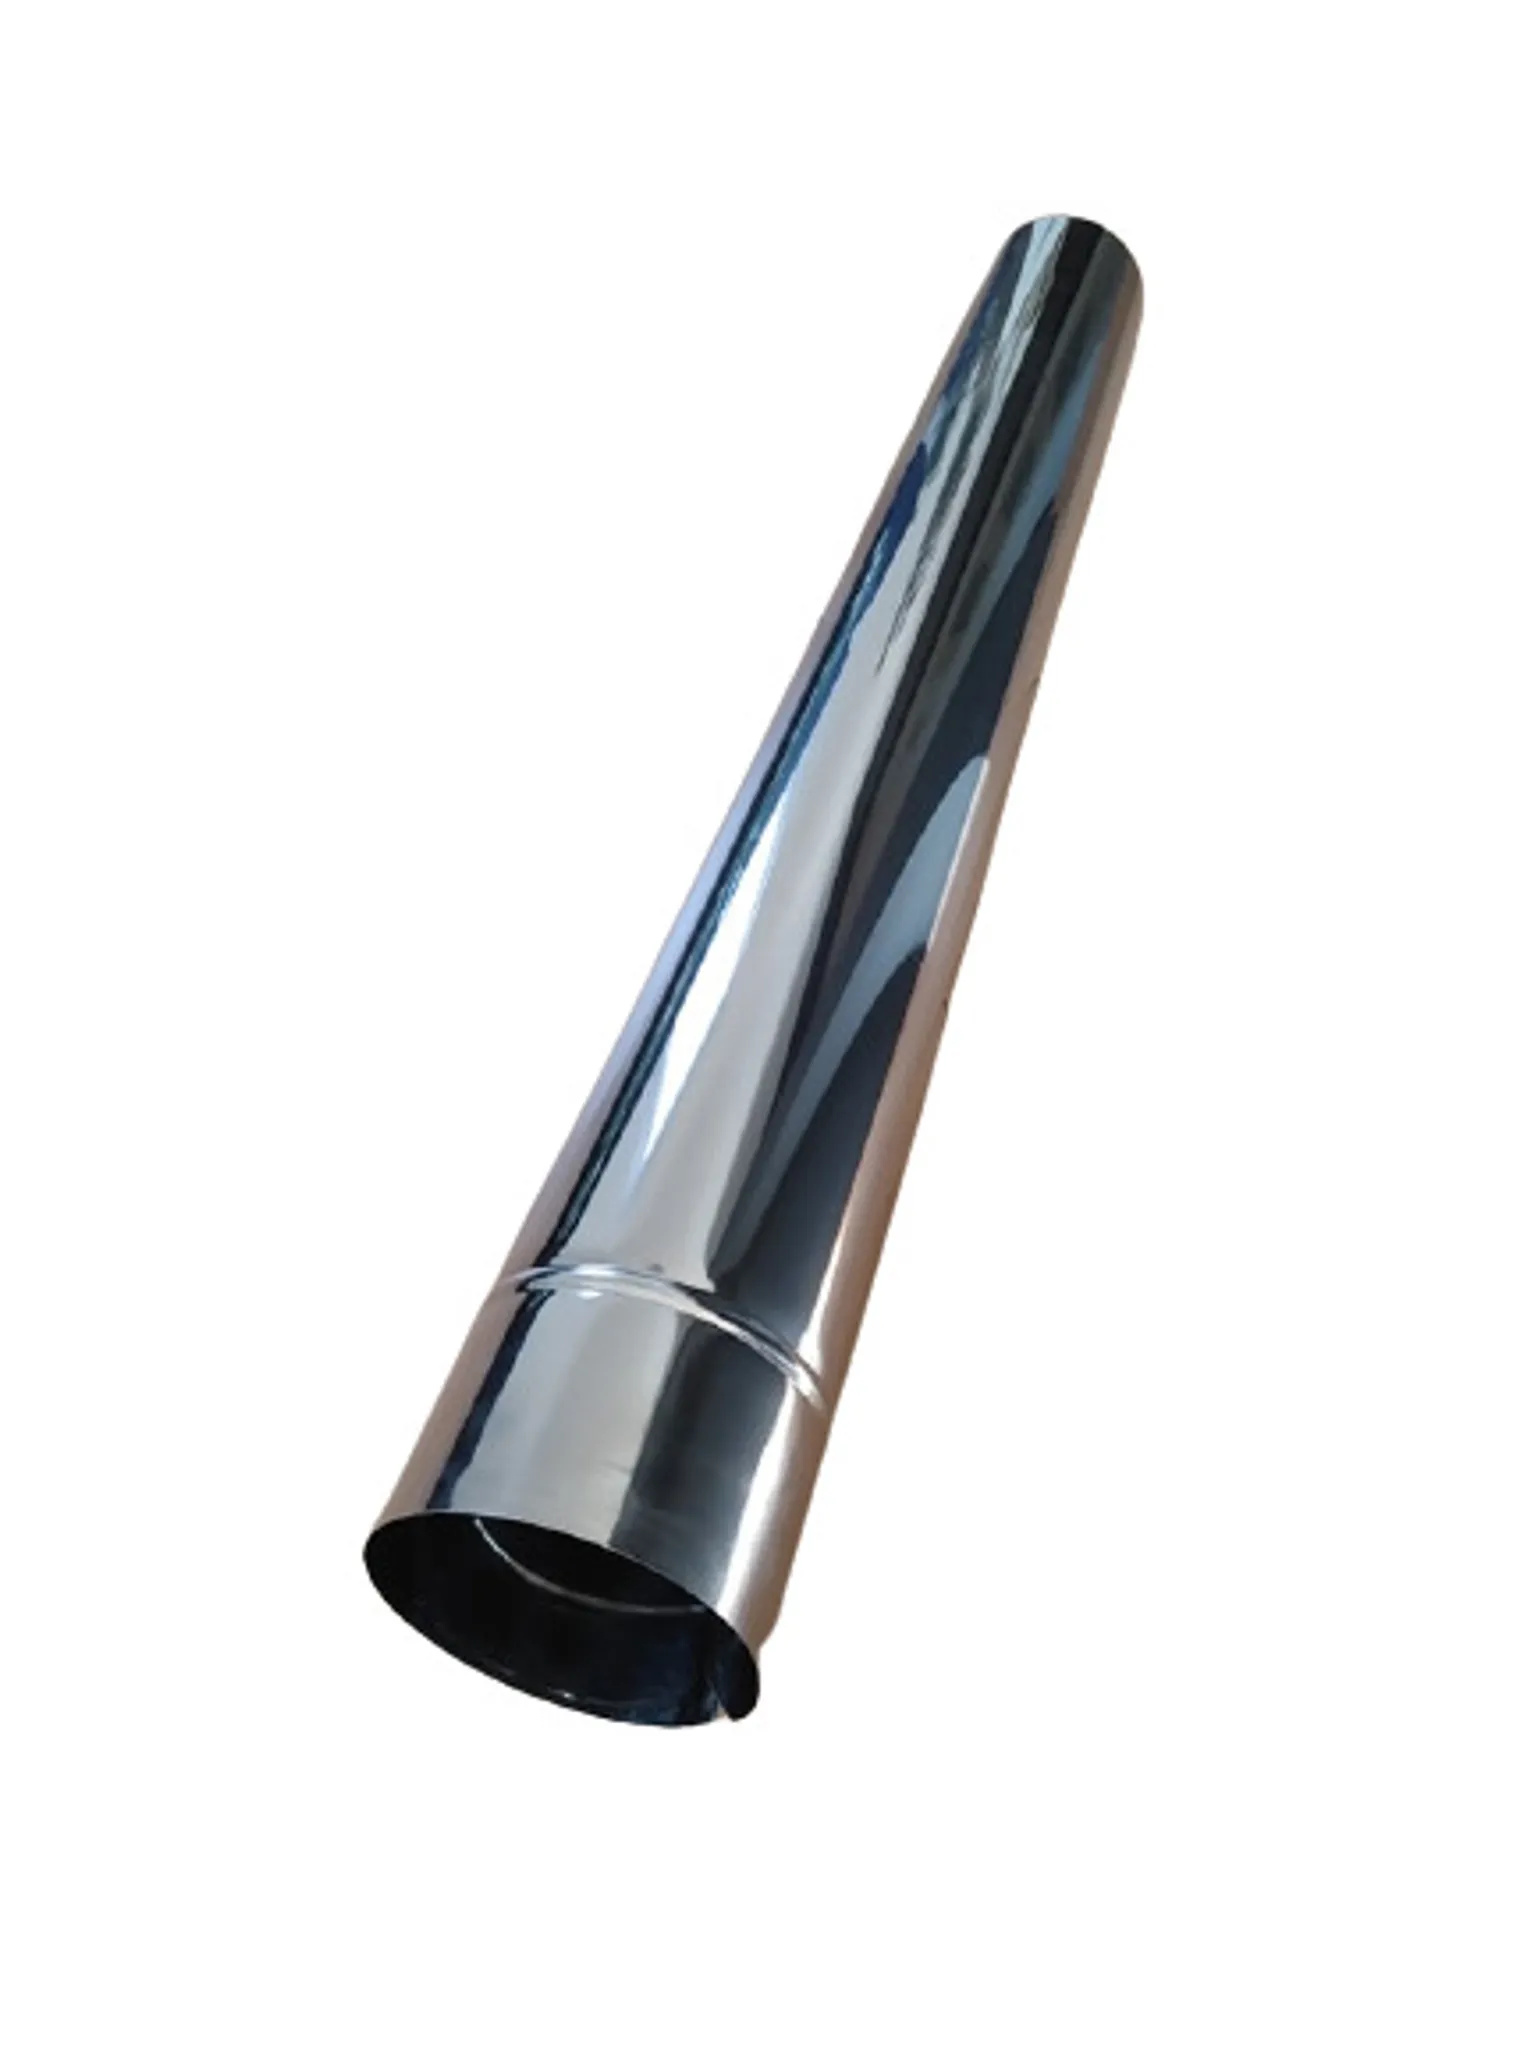 Abgasrohr Stahlblech feueraluminiert 1,0 m lang, 150 mm Ø